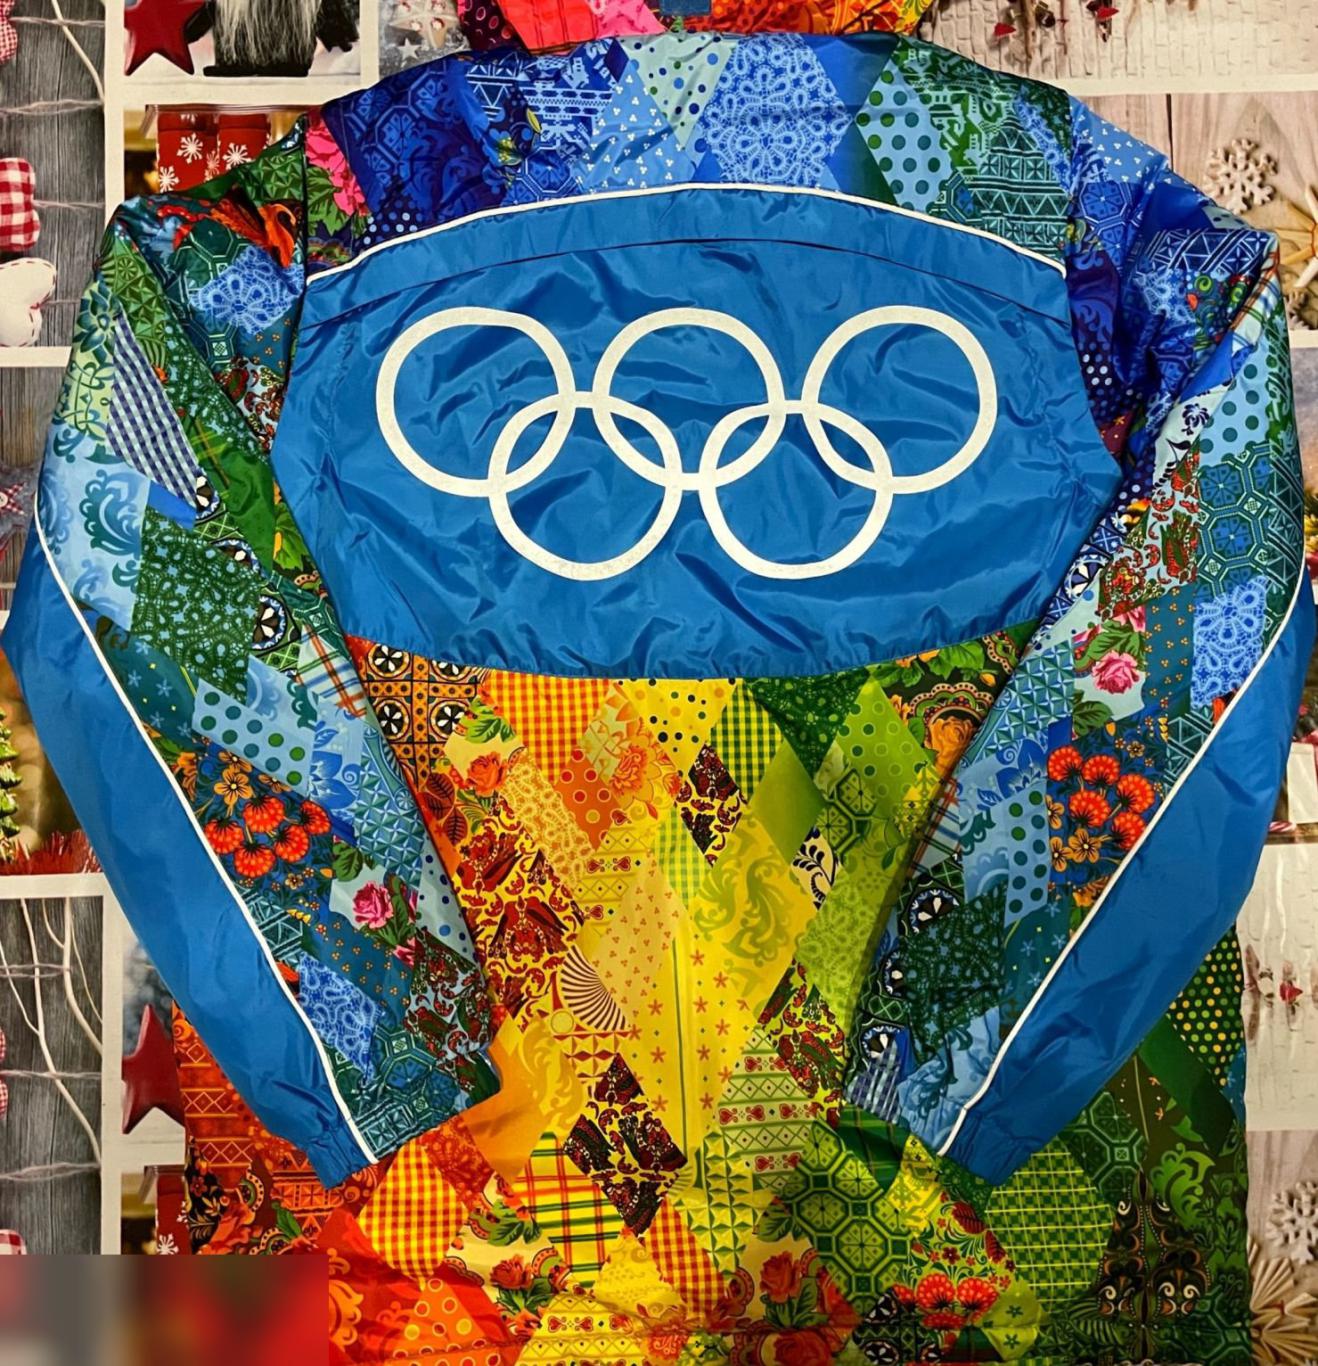 Куртка Bosco (XXS). Олимпиада Сочи 2014 3